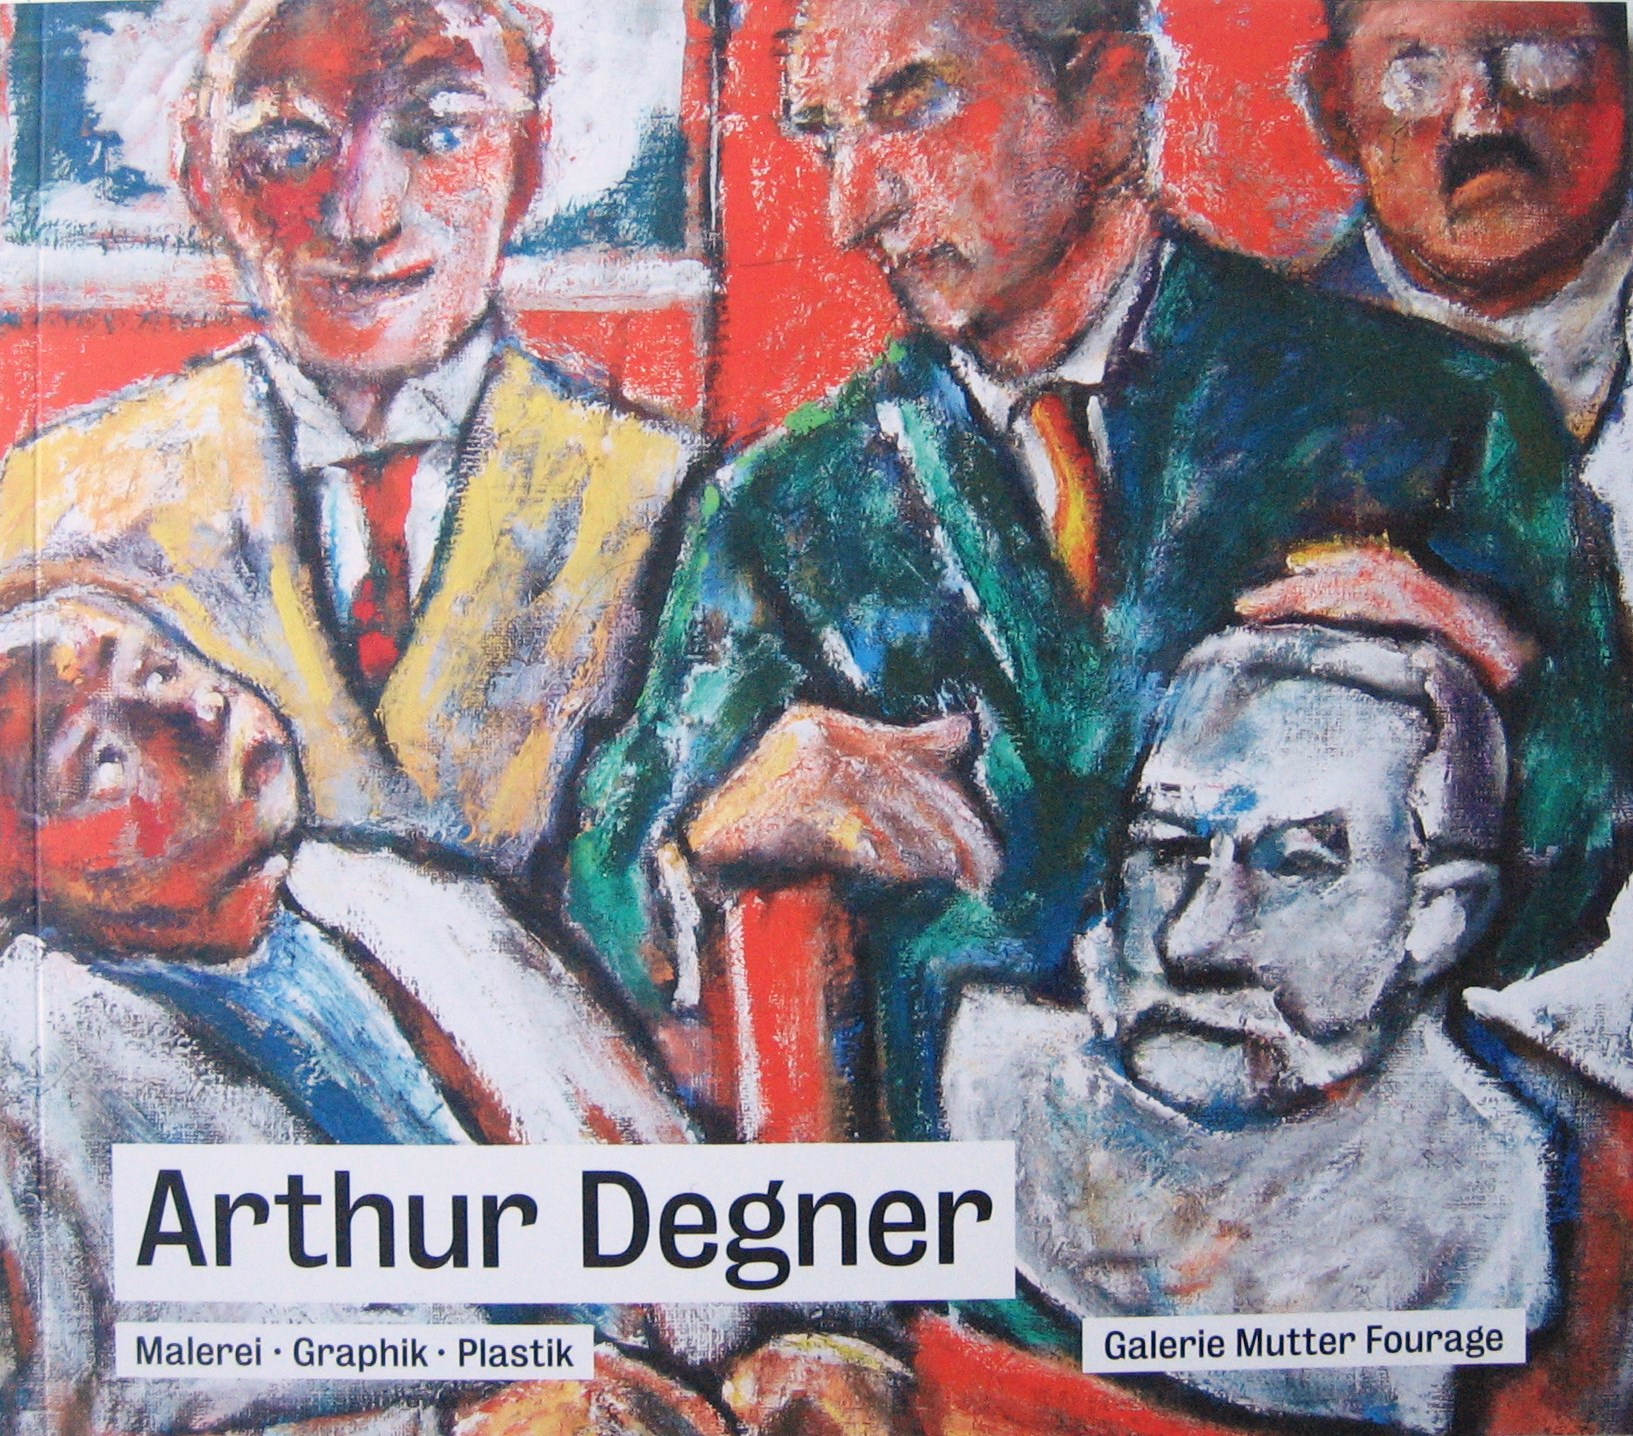 Arthur Degner